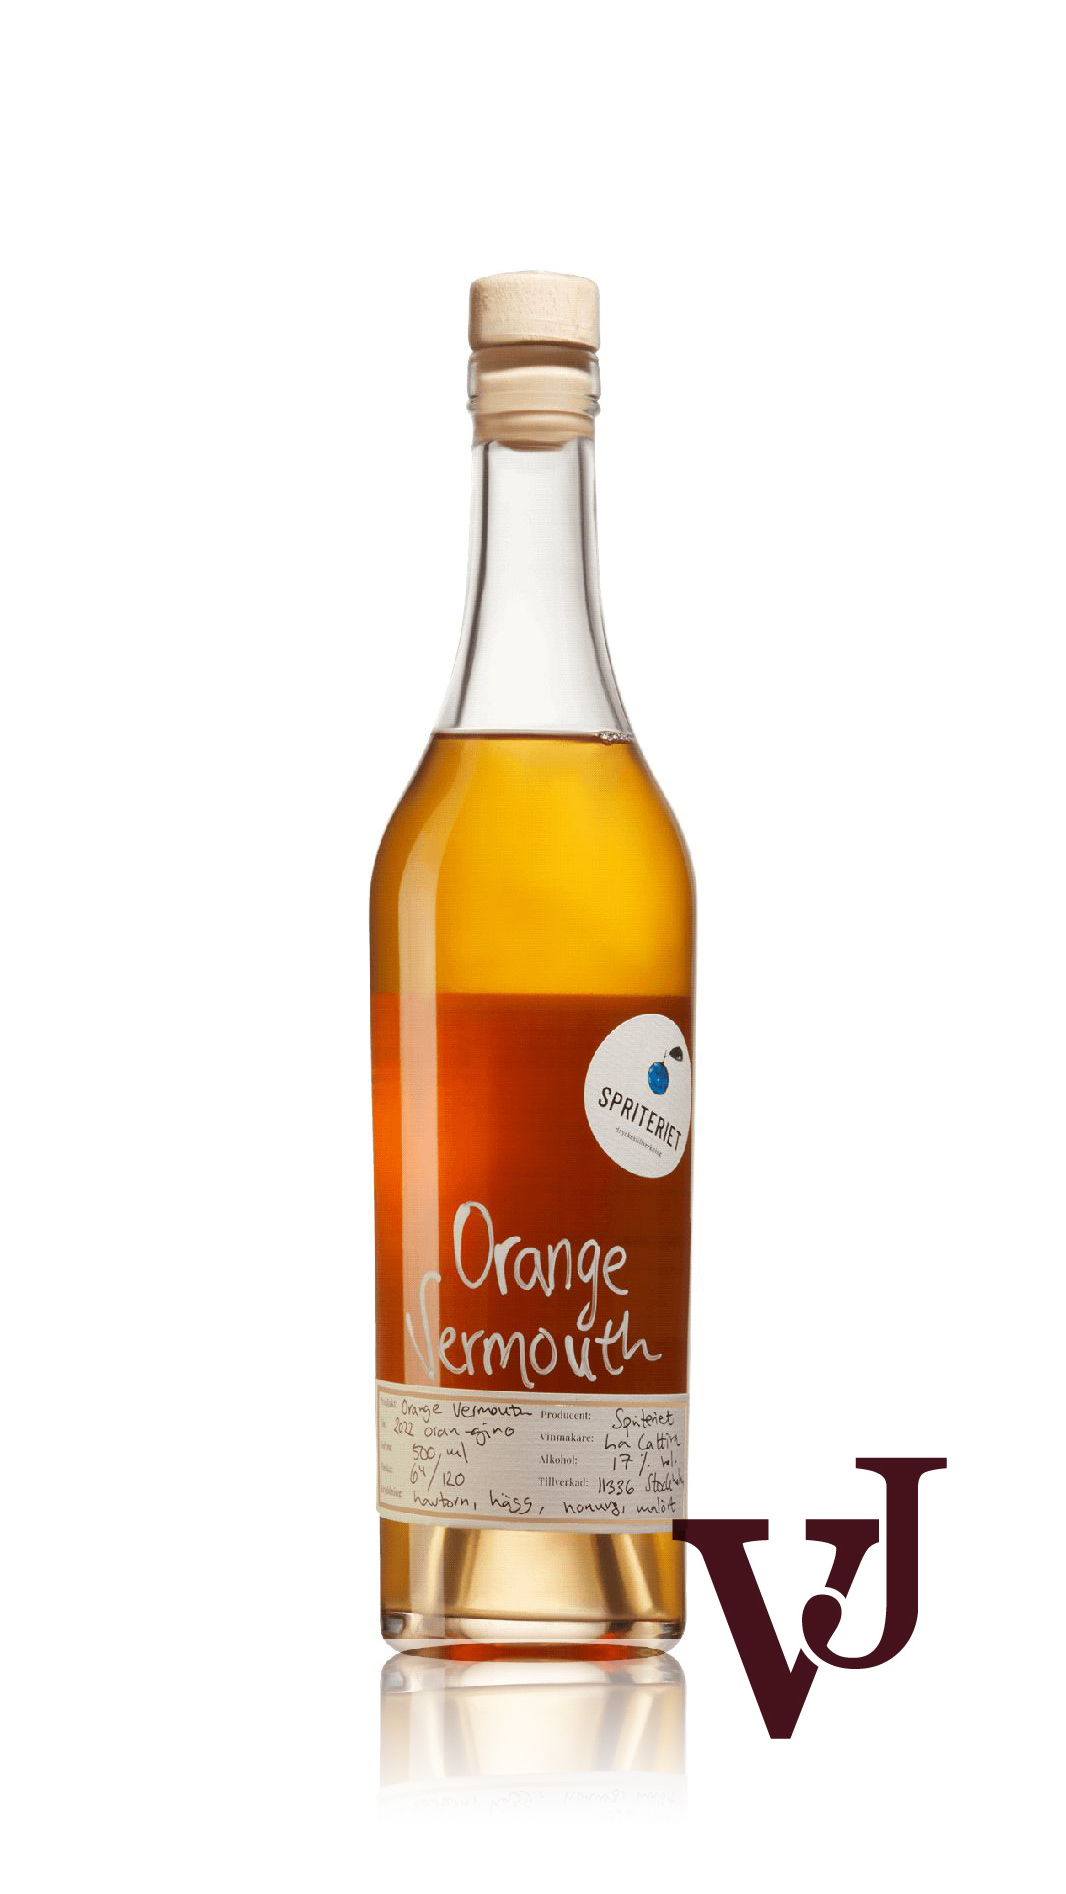 Övrigt Vin - Spriteriet Orange Vermouth artikel nummer 3050202 från producenten Spriteriet från området Sverige.